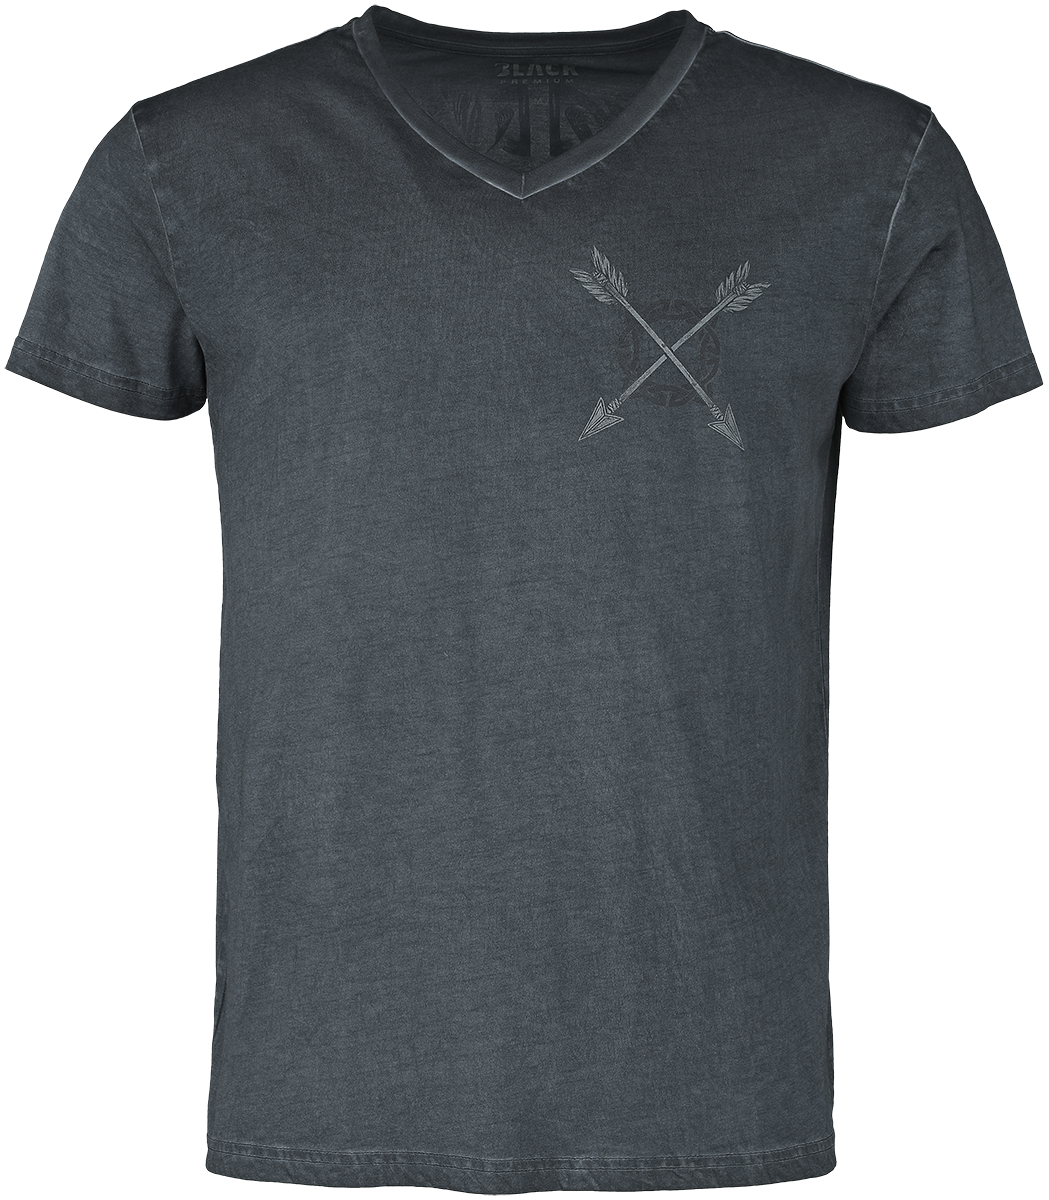 Black Premium by EMP - T-Shirt mit detailreichem Wolfsprint - T-Shirt - grau - EMP Exklusiv!